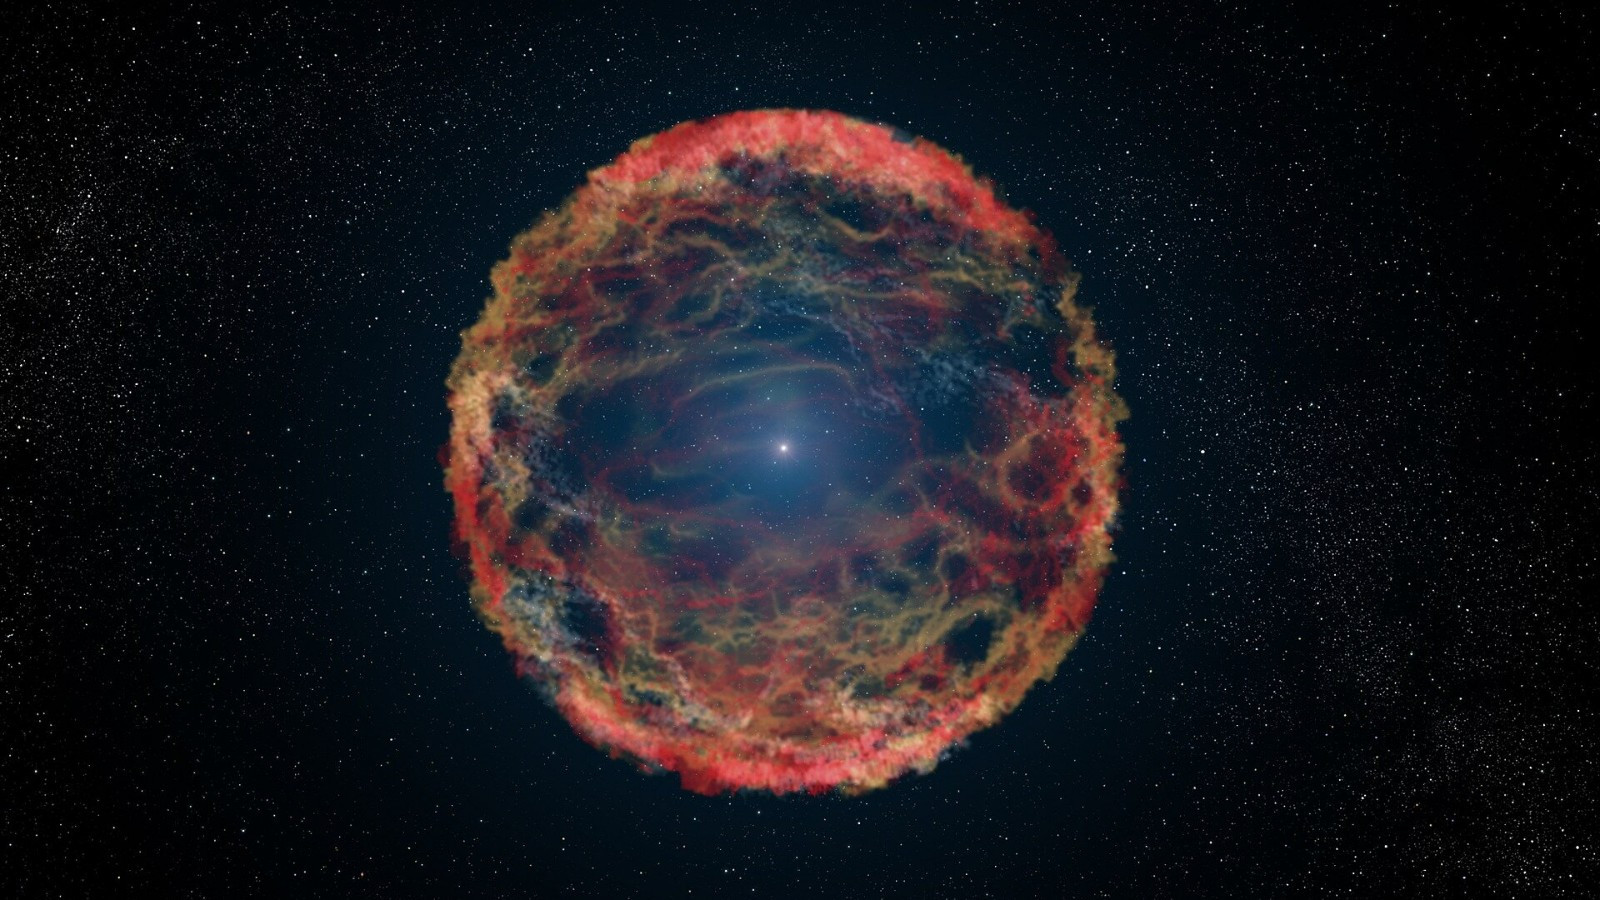 Вспышка AT2018cow произвела черную дыру или нейтронную звезду